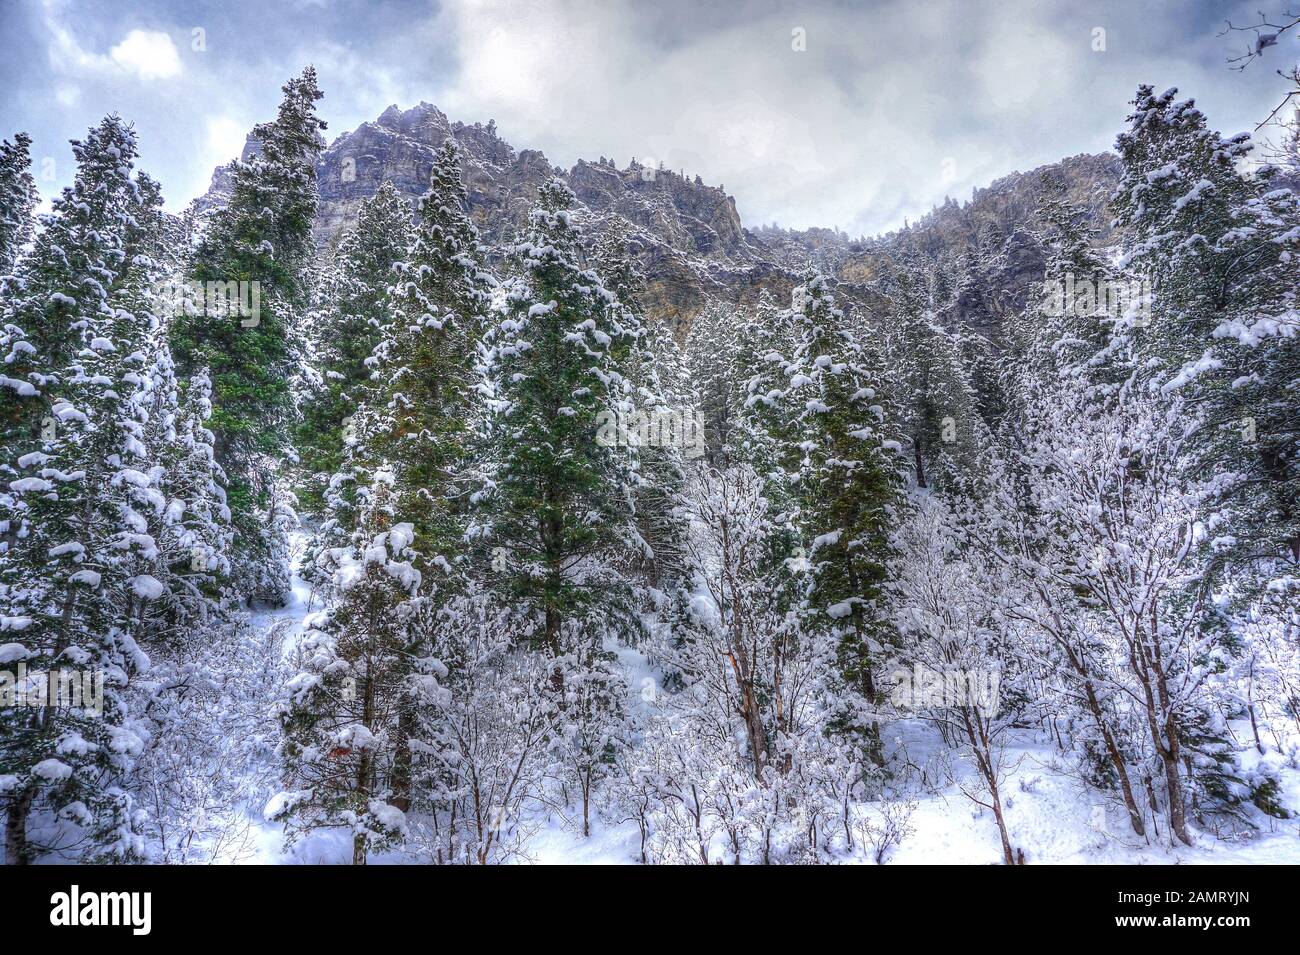 Gli abeti e i pini innevati raggiungono i cieli nebbie sulle ripide pendici delle montagne rocciose di Wasatch nell'American Fork Canyon, Utah, nel wint Foto Stock